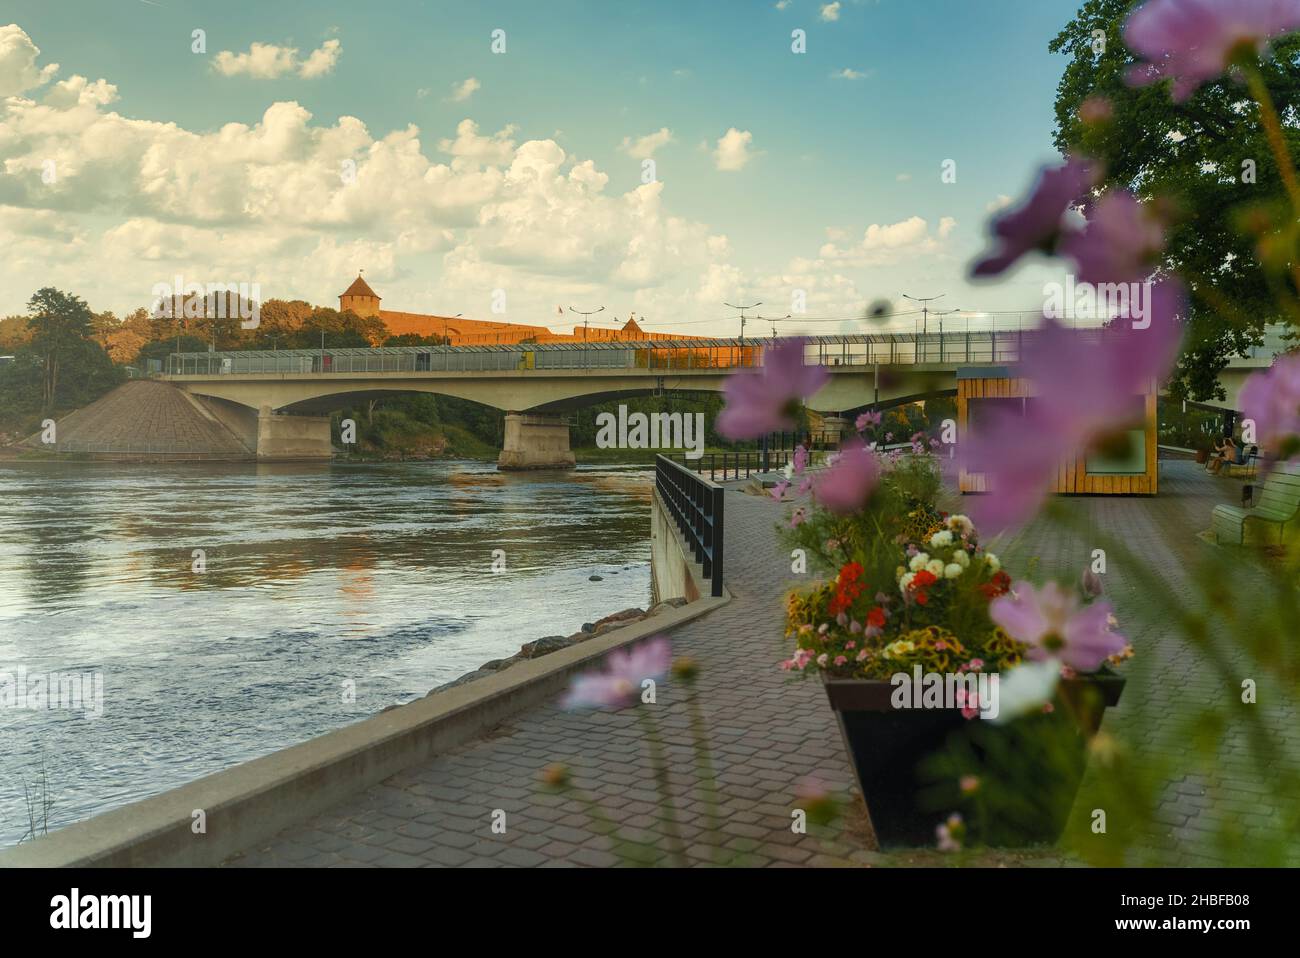 Promenade by the river Narva in Estonia. Stock Photo